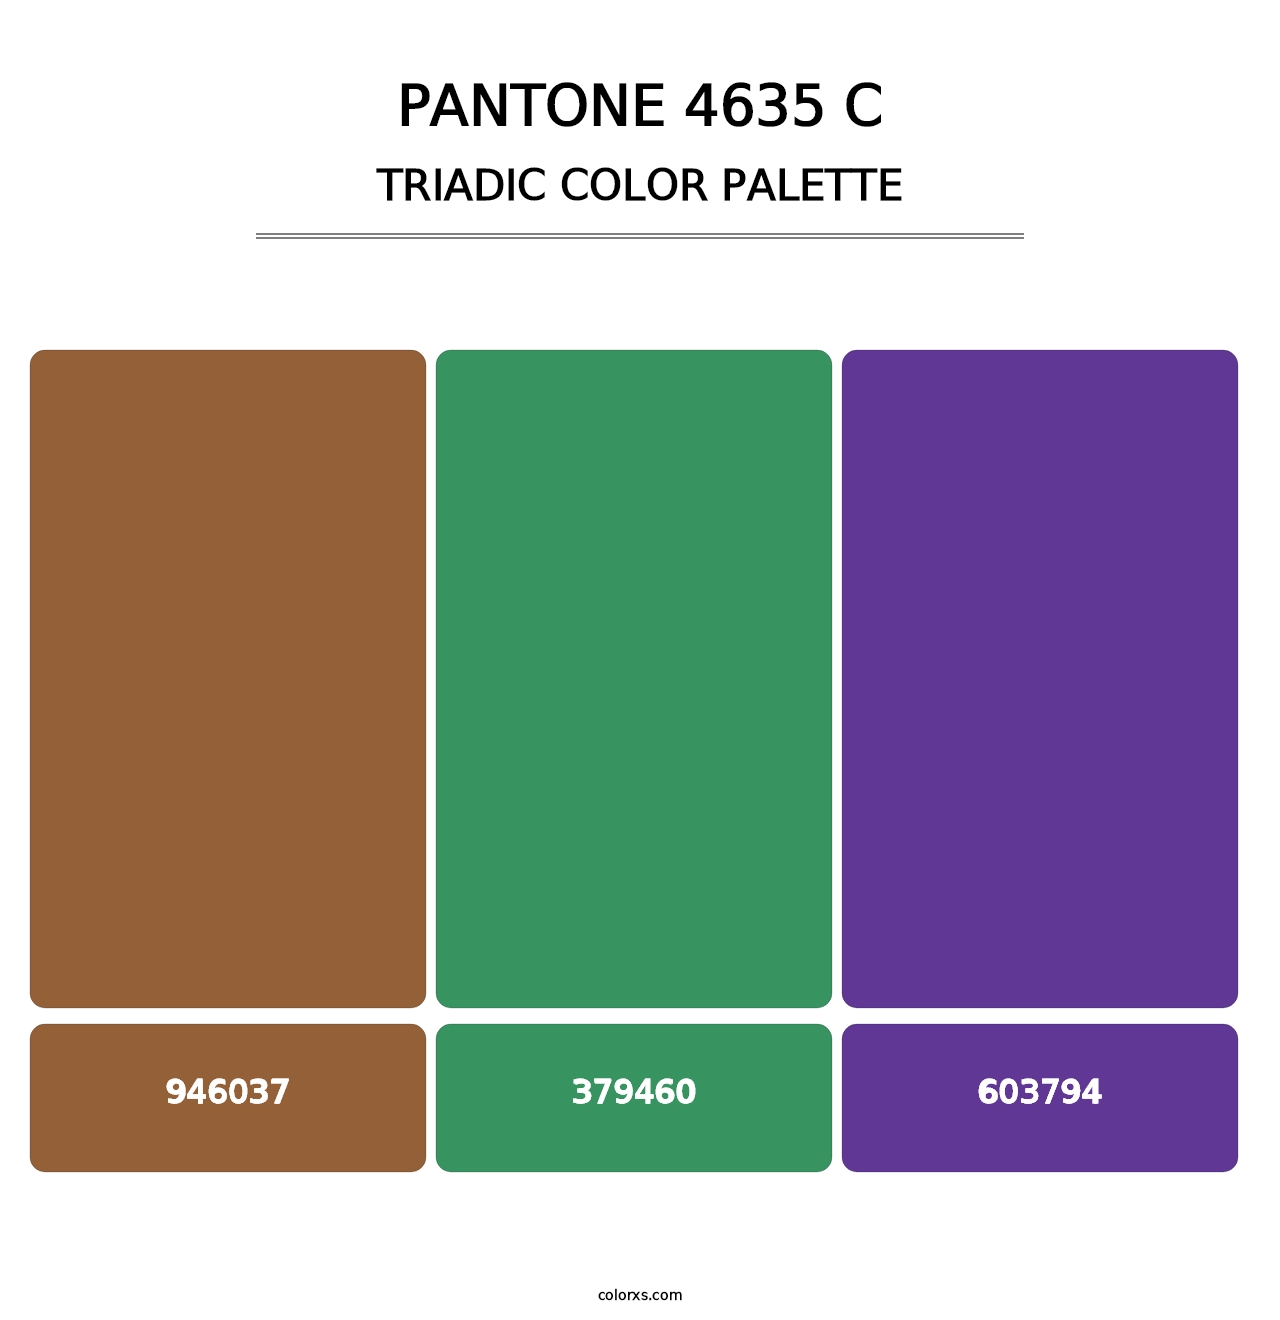 PANTONE 4635 C - Triadic Color Palette